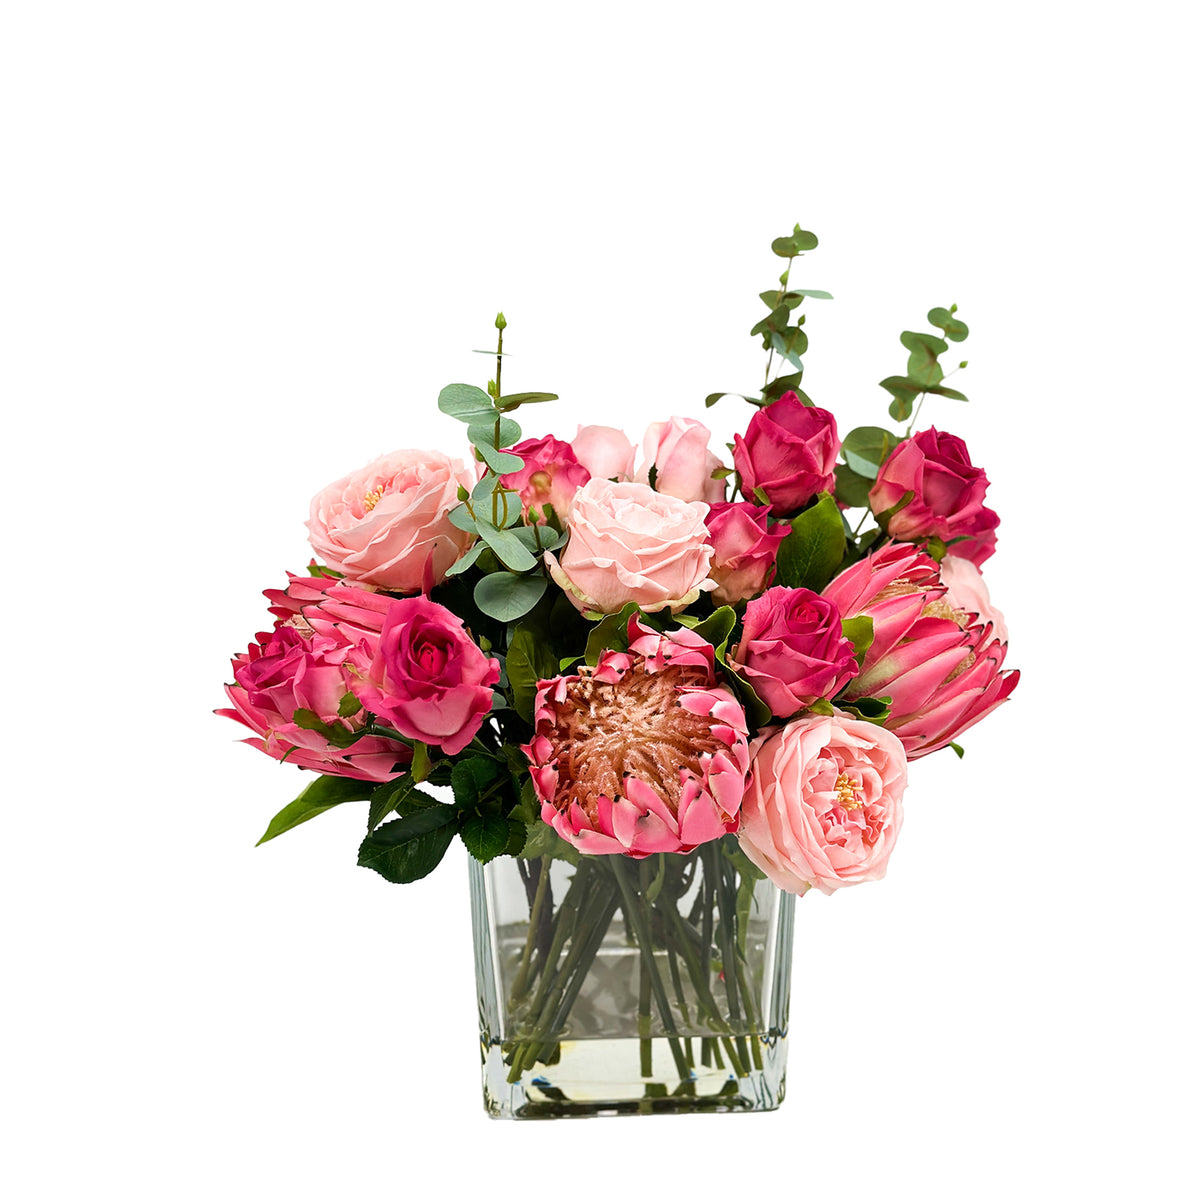 Mix Arrangement Rose Protea In Square Vase